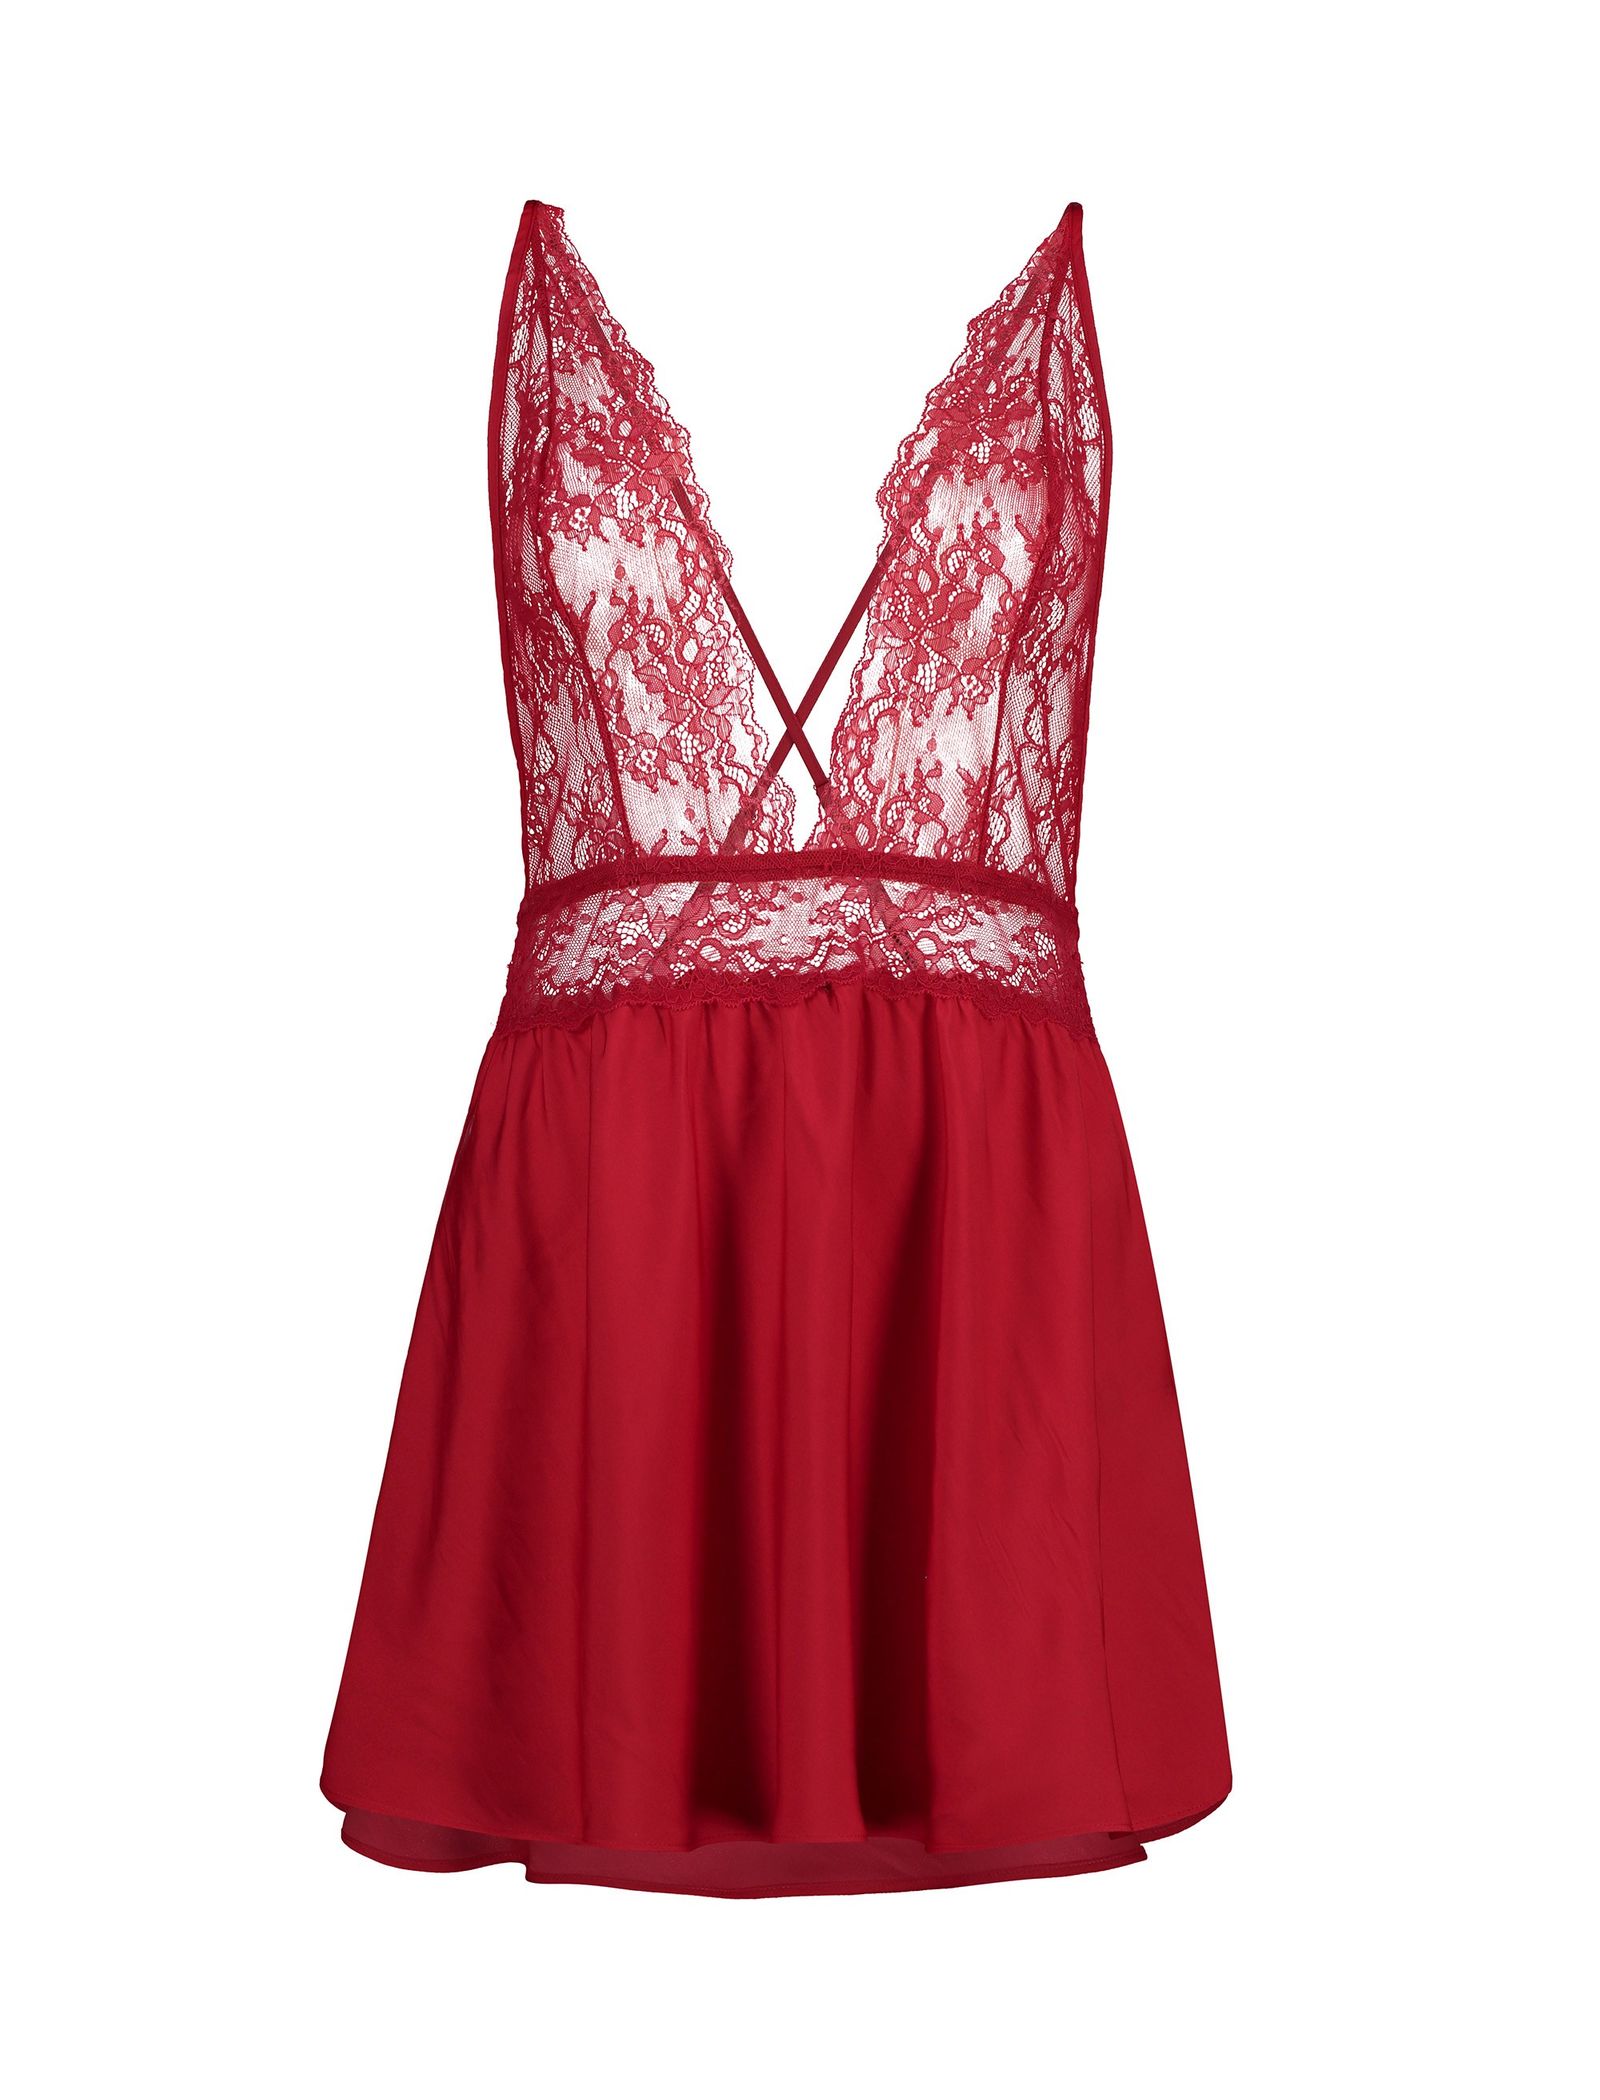 لباس خواب یک تکه زنانه - اتام - قرمز - 1